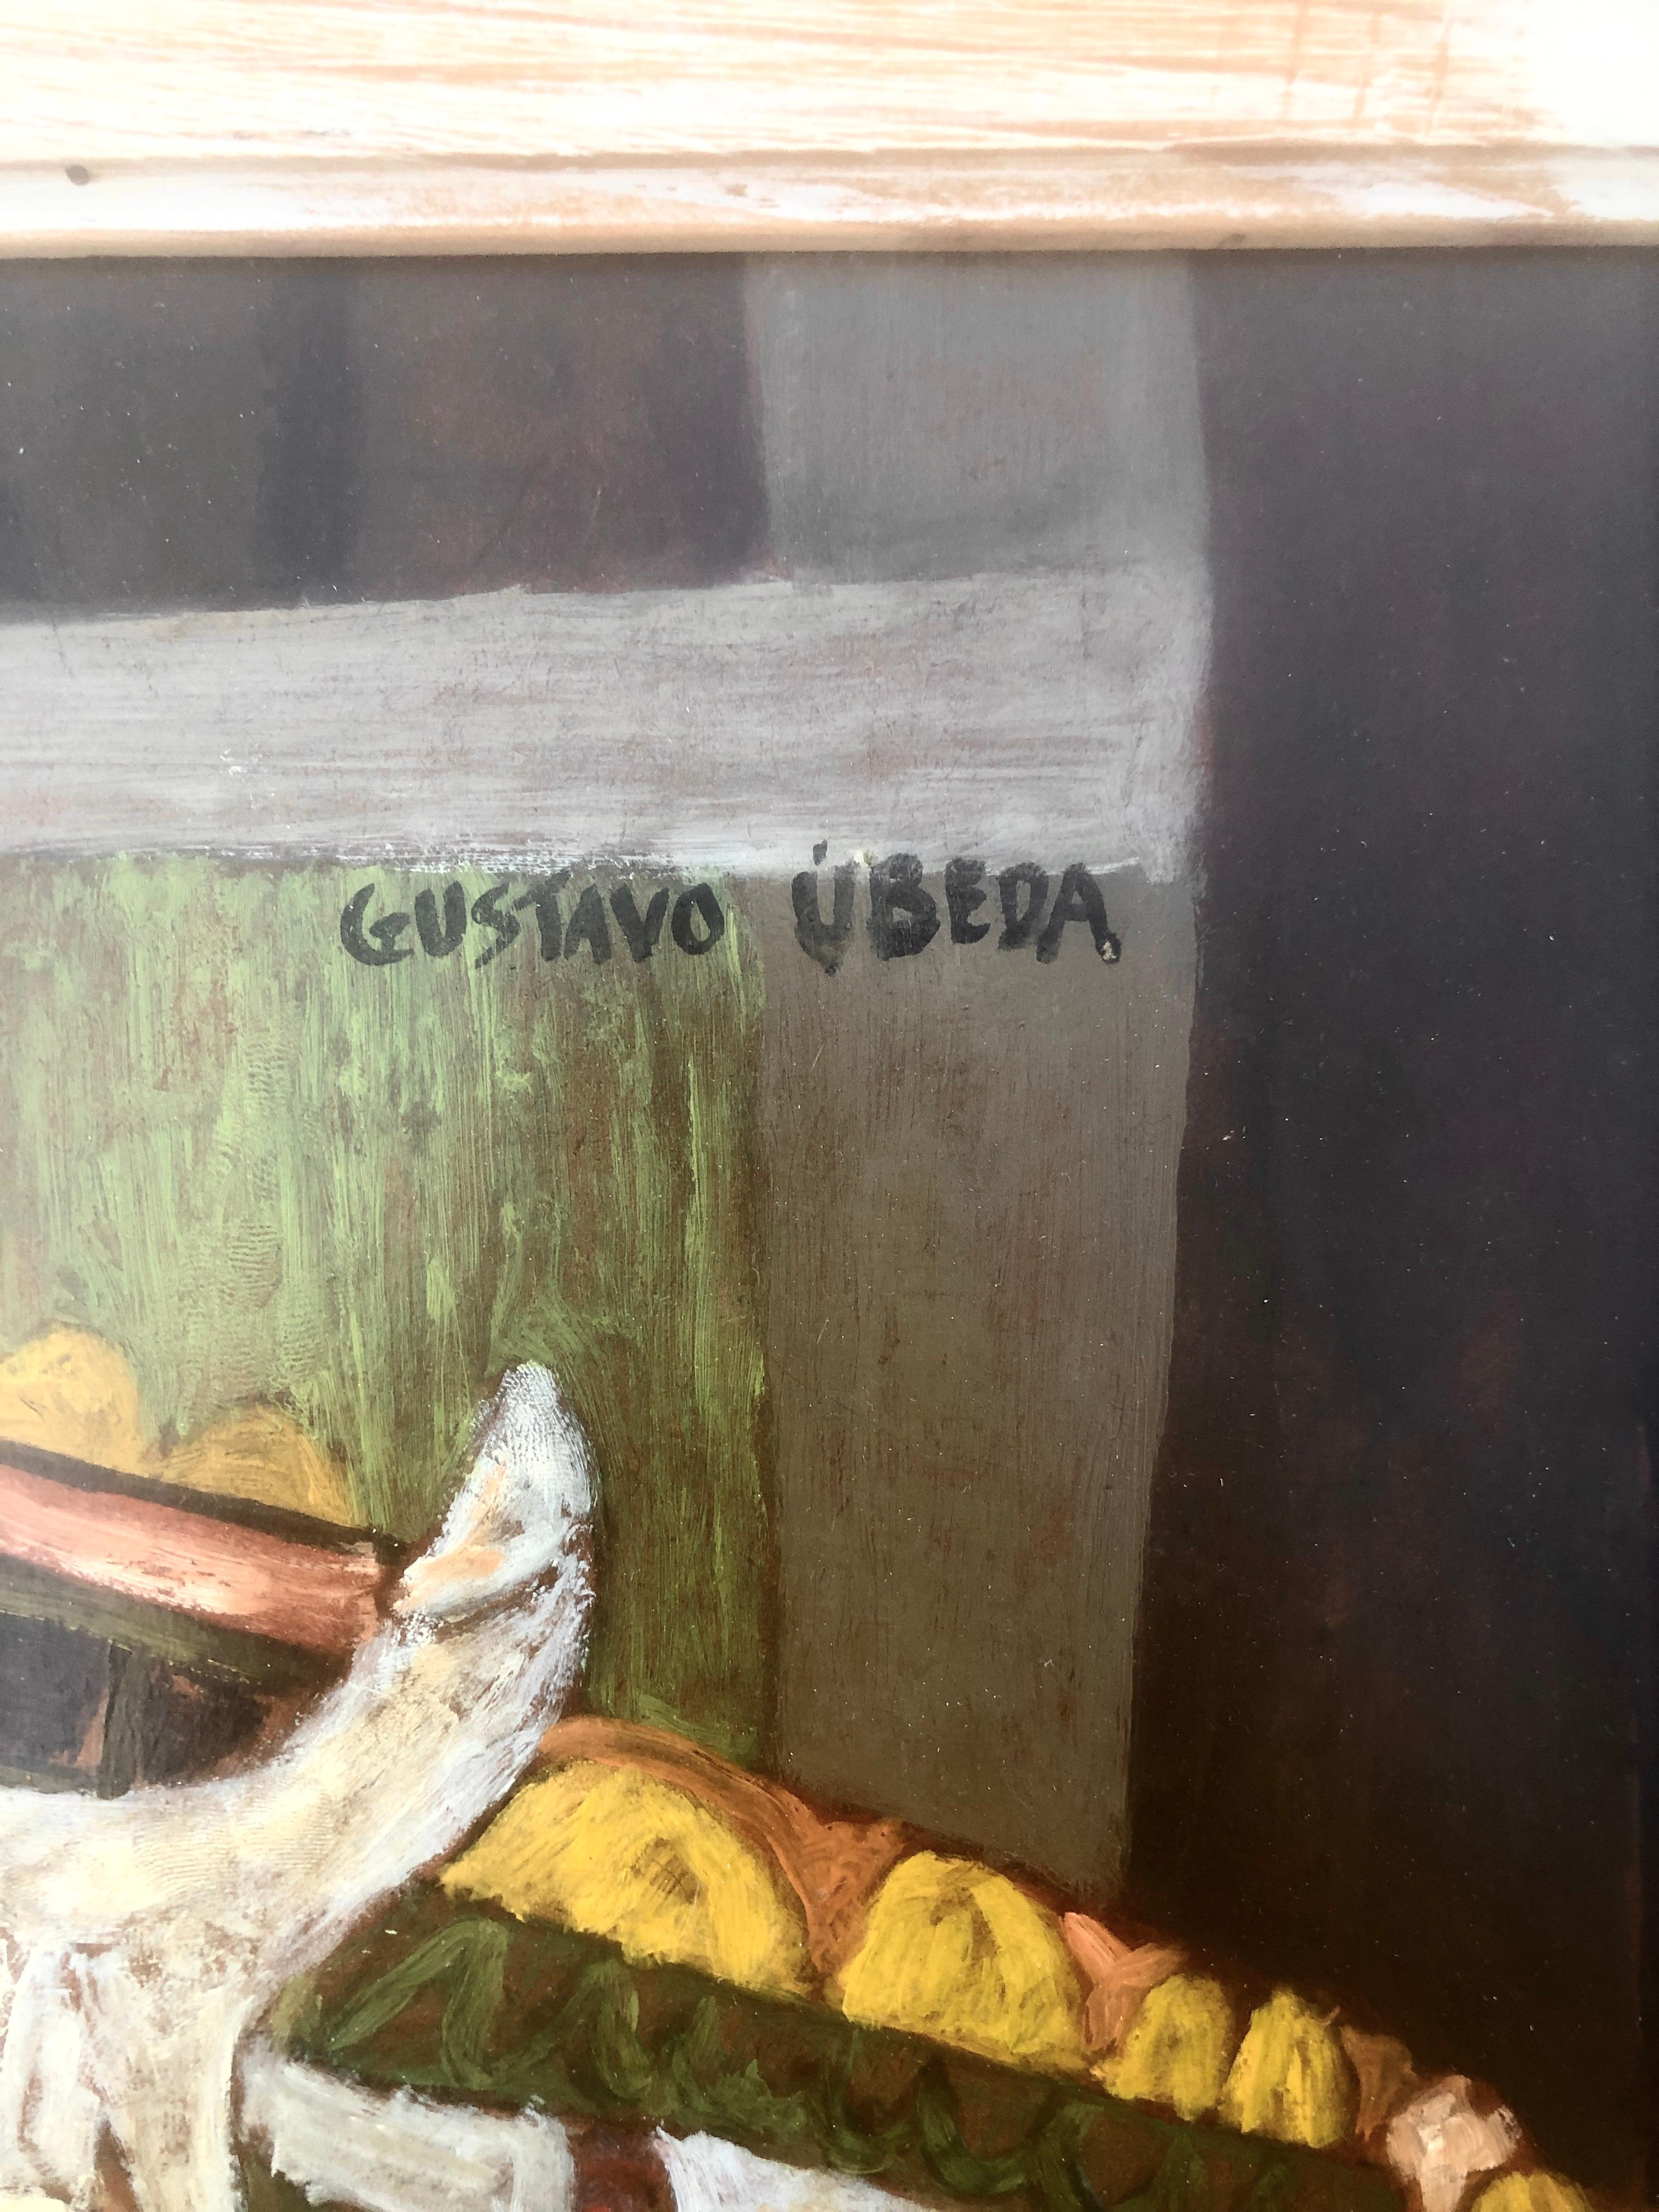 Gustavo Úbeda (1930-1994) - Picassische surrealistische Figur - Öl auf Tischplatte.
Das Öl misst 50x40 cm.
Rahmengröße 65x55 cm.

Das Gemälde von Gustavo Úbeda Romero (Herencia, 1930 - Sao Paulo, 1994) stammt aus einer Familie von Malern, die durch